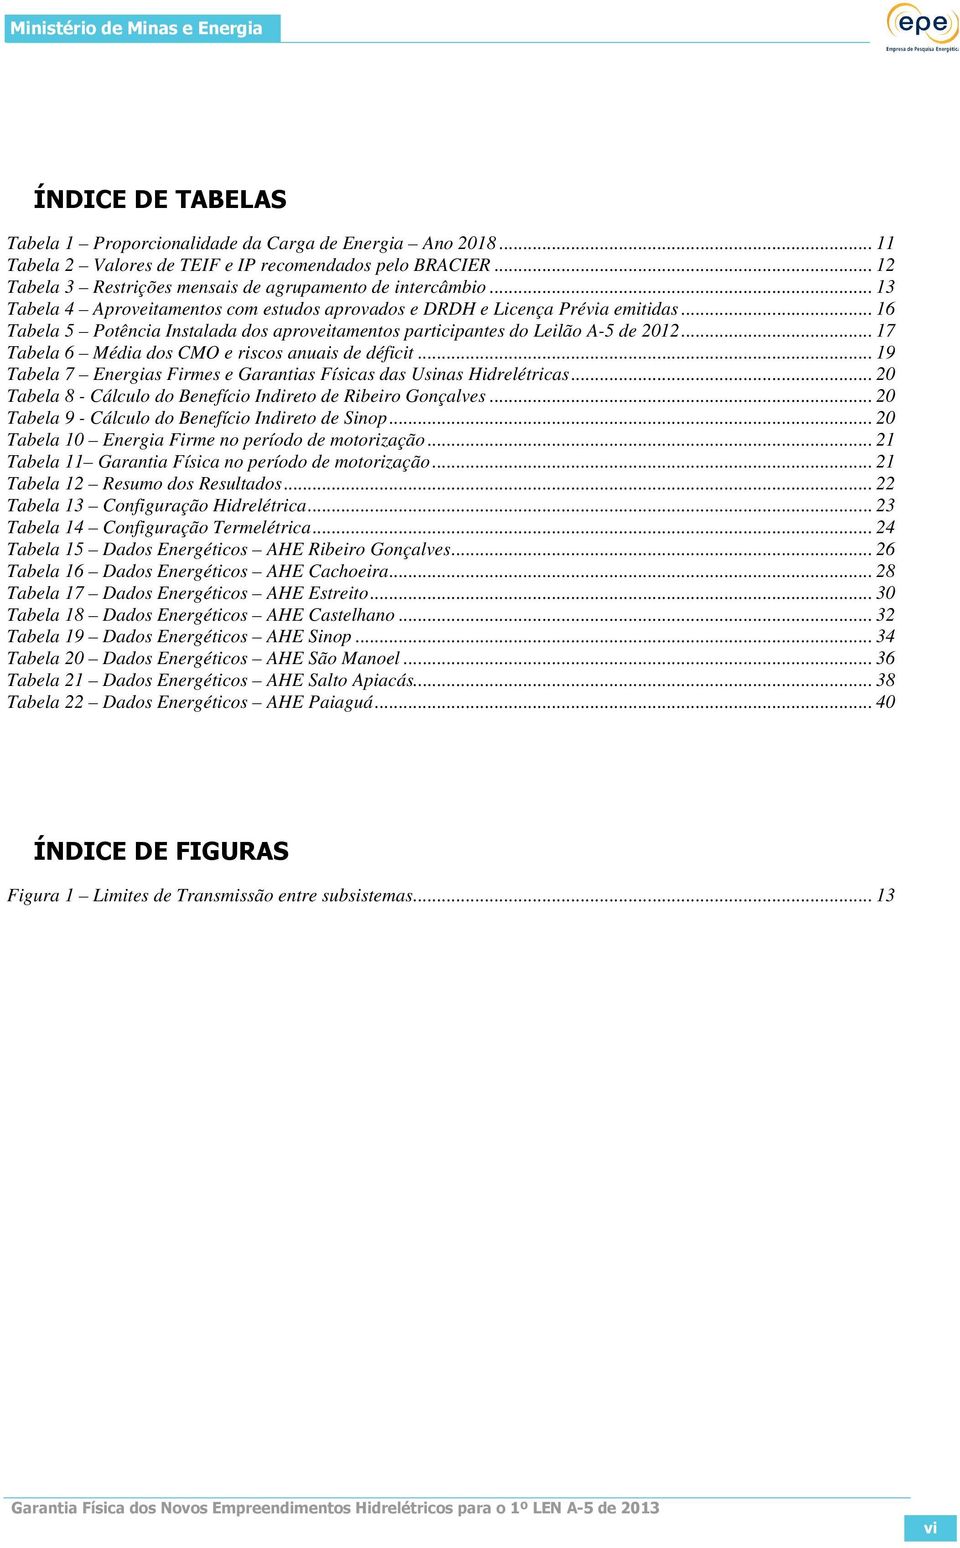 .. 17 Tabela 6 Média dos CMO e riscos anuais de déficit... 19 Tabela 7 Energias Firmes e Garantias Físicas das Usinas Hidrelétricas... 20 Tabela 8 - Cálculo do Benefício Indireto de Ribeiro Gonçalves.